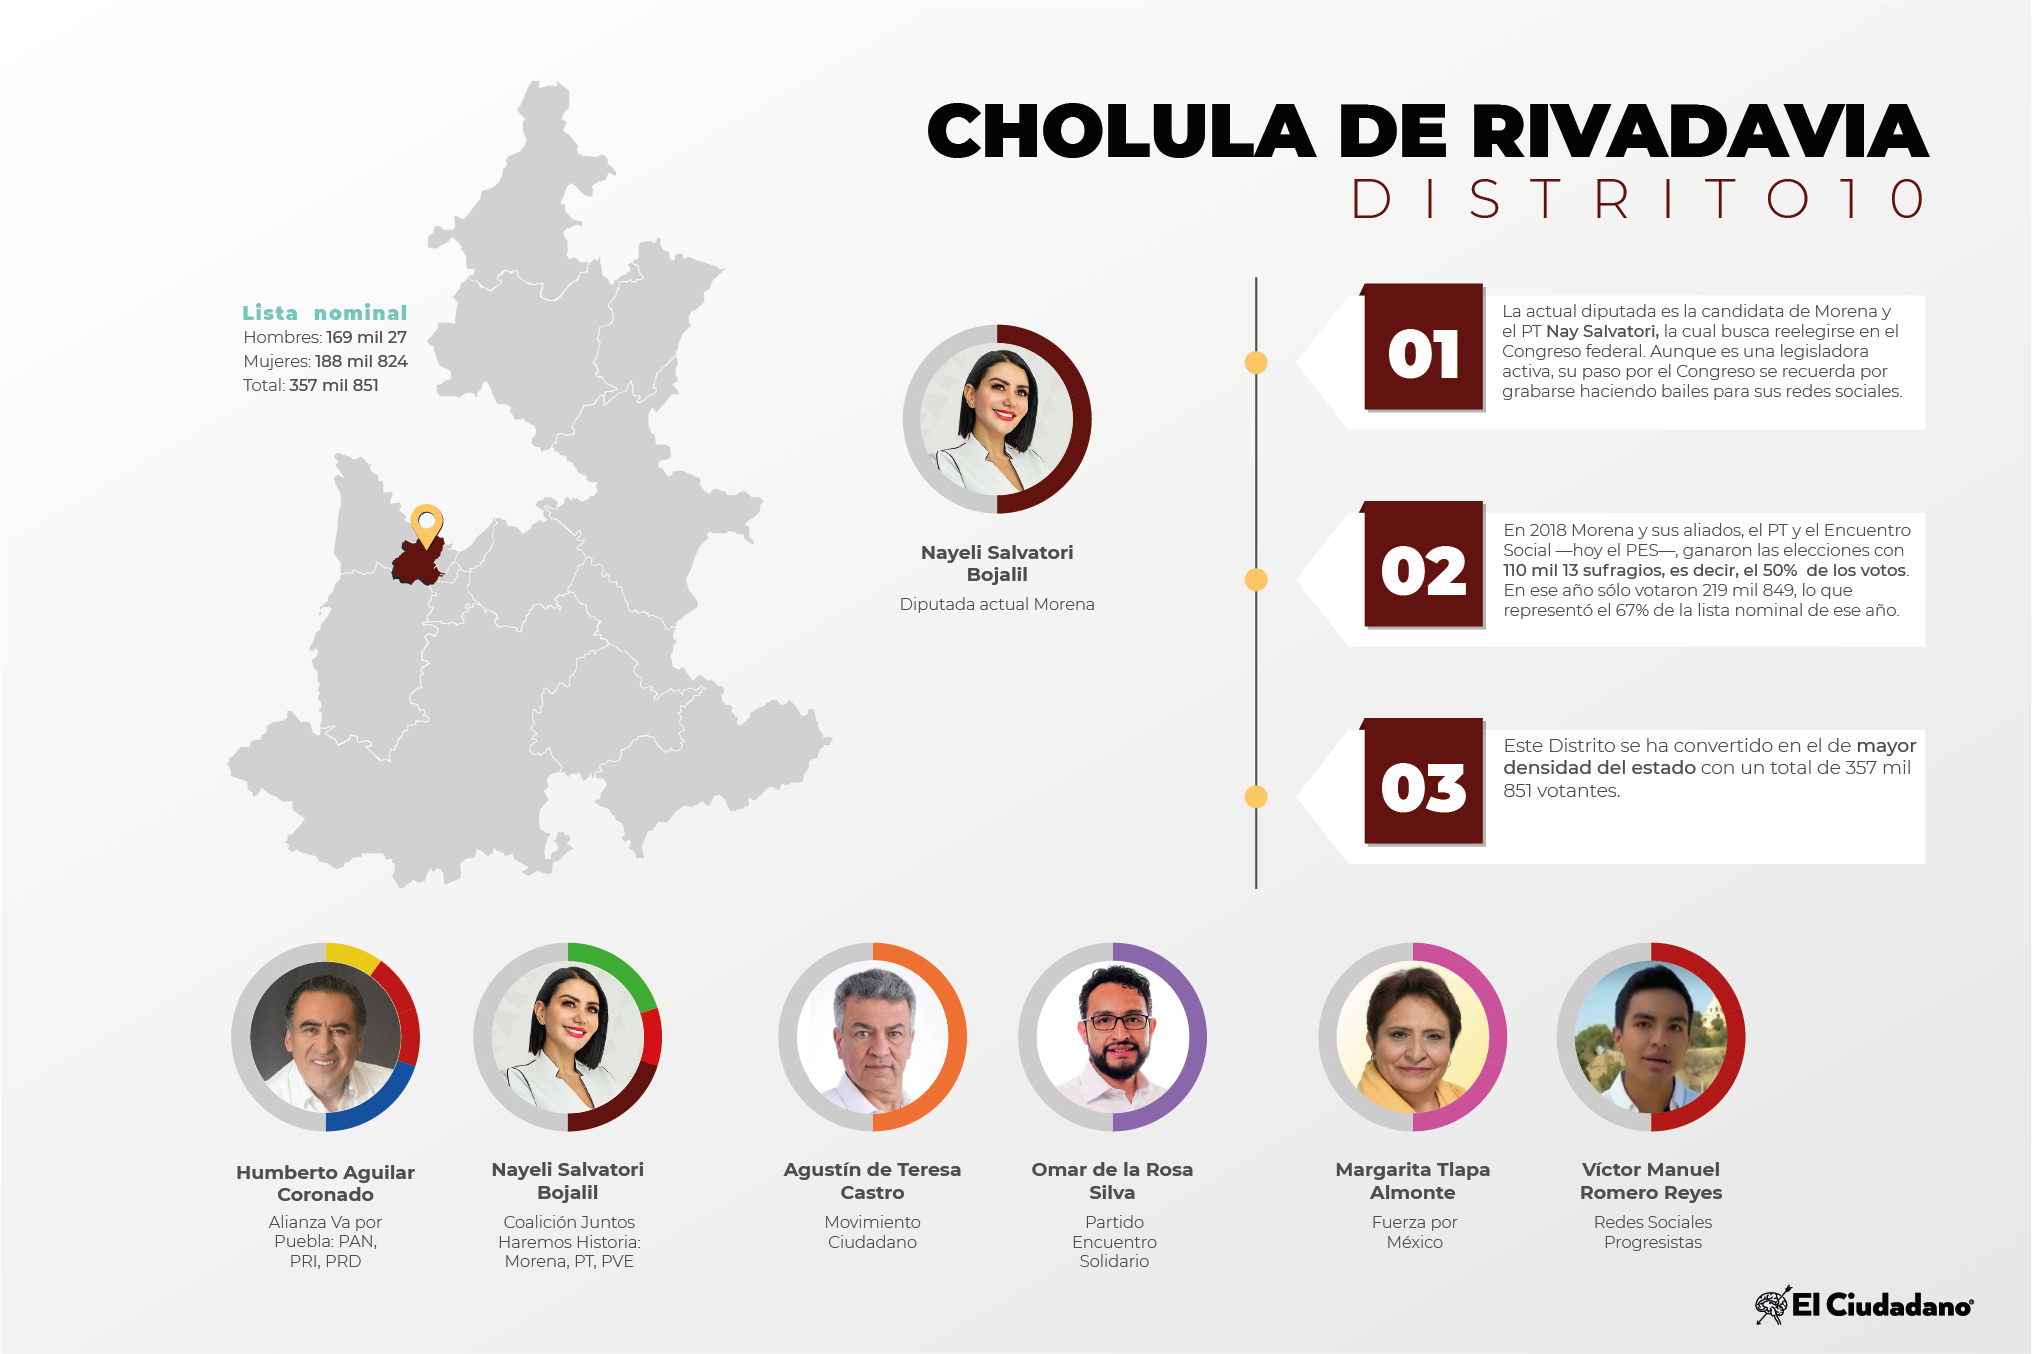 Radiografía de distritos electorales federales: Distrito 10, Cholula